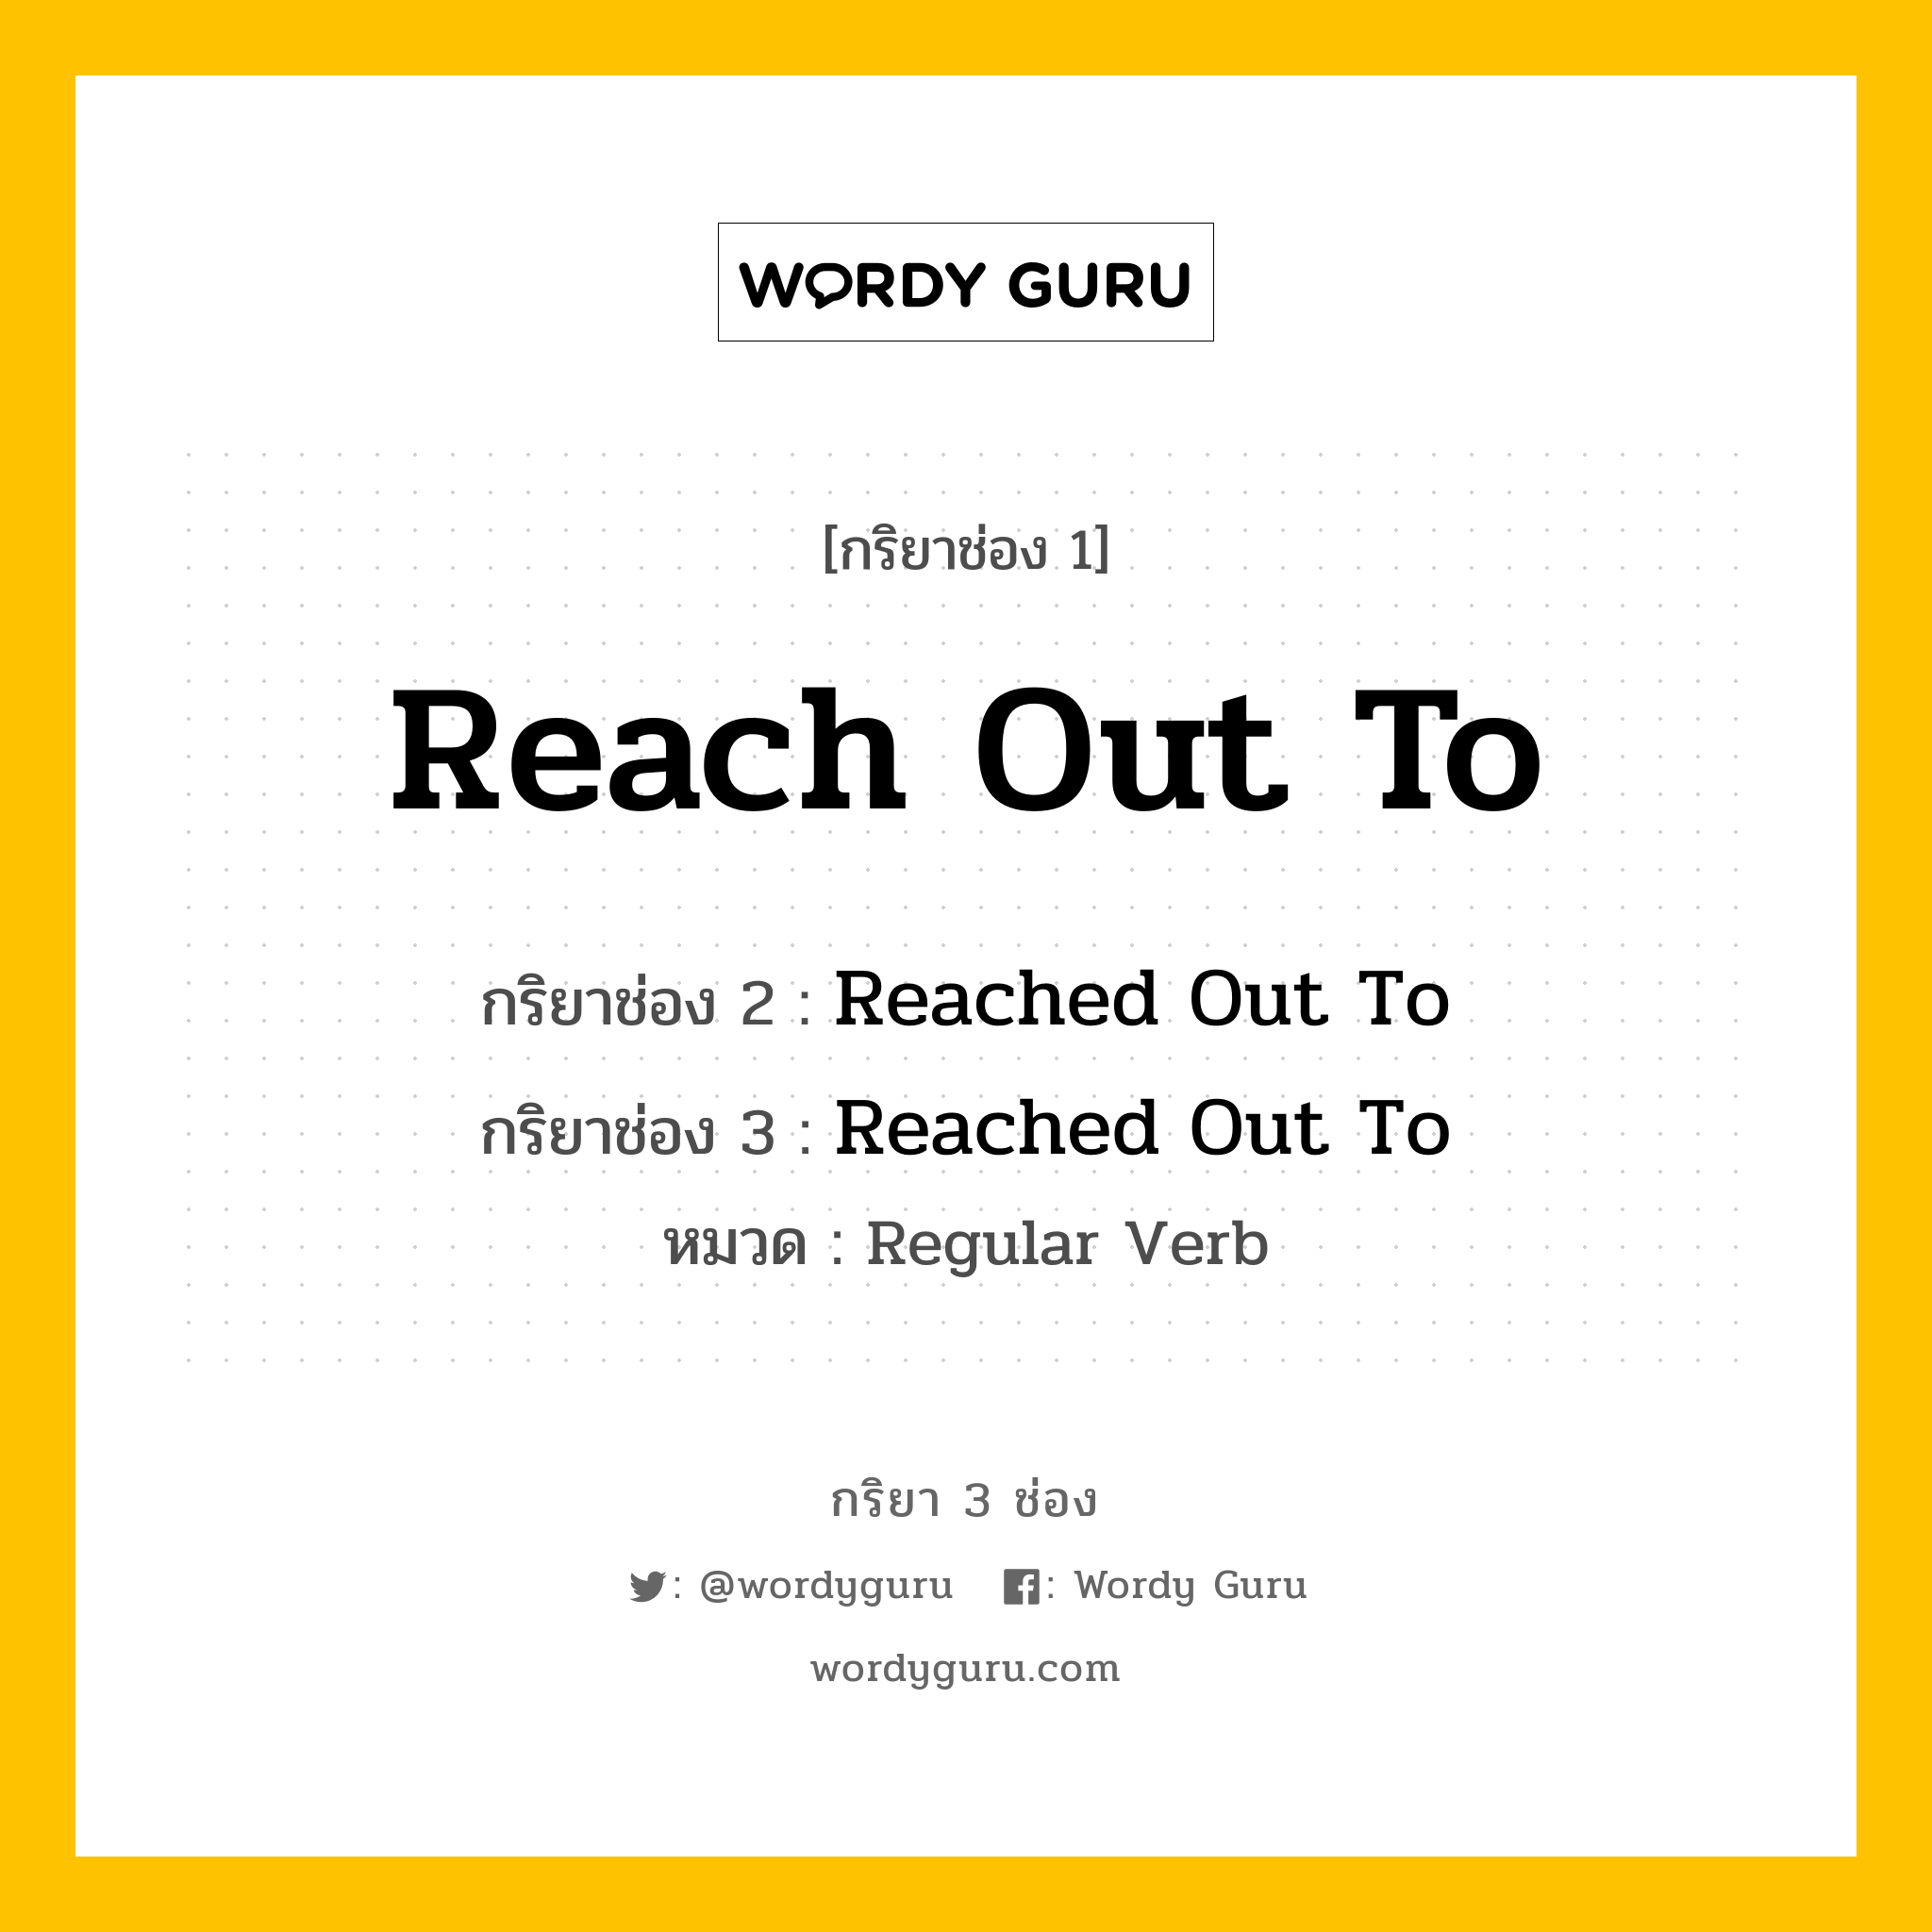 กริยา 3 ช่อง: Reach Out To ช่อง 2 Reach Out To ช่อง 3 คืออะไร, กริยาช่อง 1 Reach Out To กริยาช่อง 2 Reached Out To กริยาช่อง 3 Reached Out To หมวด Regular Verb หมวด Regular Verb